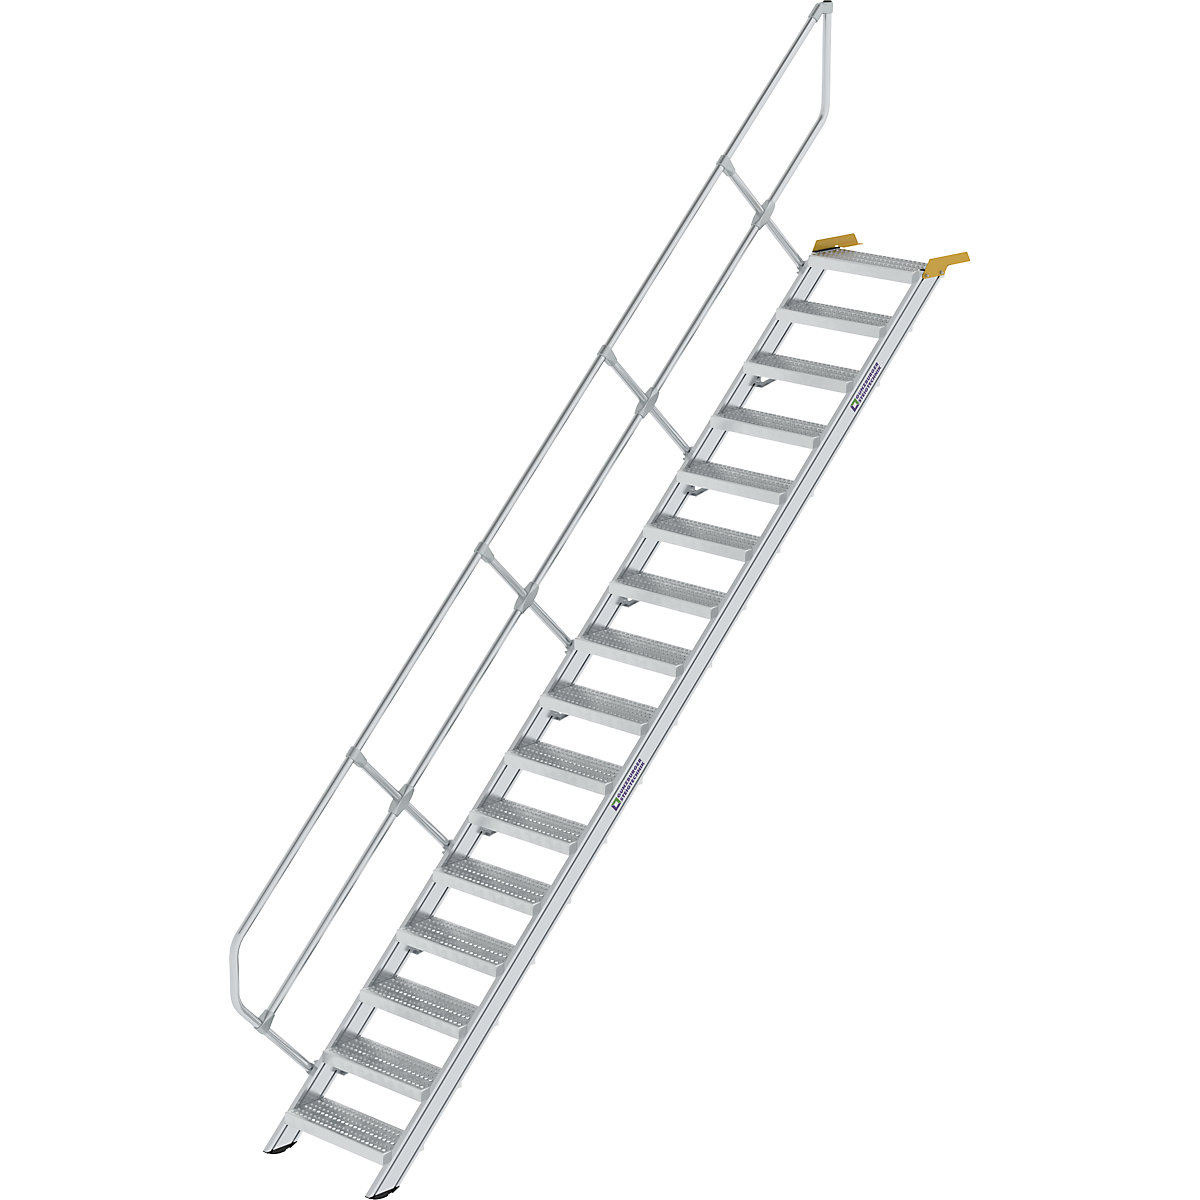 Ipari lépcső – MUNK, perforált lemezes acélfokok, lépcsőfokok szélessége 600 mm, 16 lépcsőfok-9